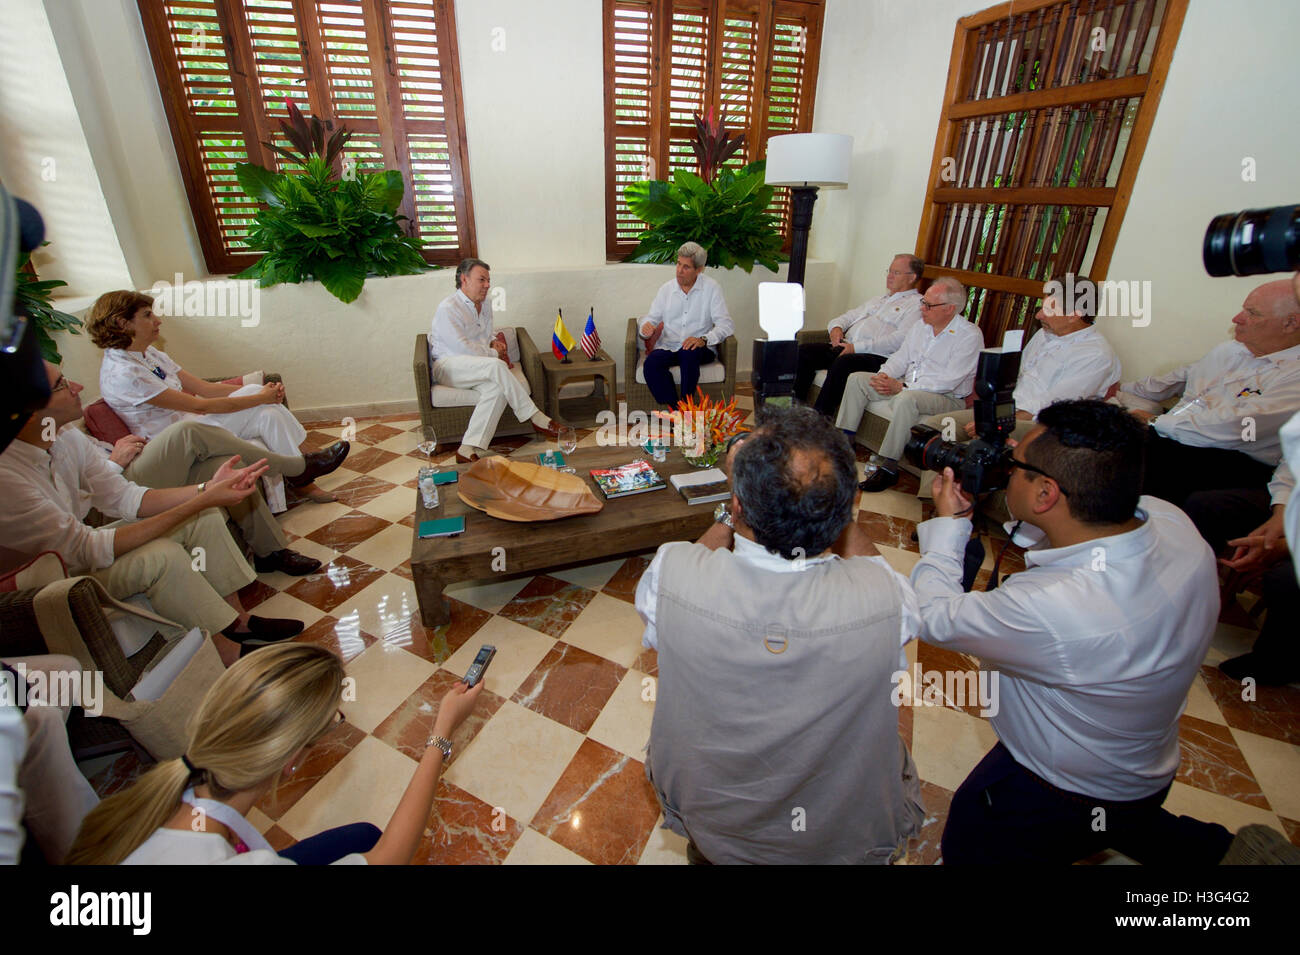 Le secrétaire d'Etat John Kerry, flanquée de représentant américain Sam Farr, Envoyé spécial des États-Unis pour le processus de paix en Colombie Bernard Aronson, Ambassadeur des États-Unis en Colombie Kevin Whitaker, et le sénateur américain Ben Cardin, siège avec le président colombien Juan Manuel Santos à la Casa de marques de Valdehoyos à Cartagena, Colombie, le 26 septembre 2016, alors qu'il se rend dans le pays pour assister à une cérémonie de la paix entre le gouvernement et les Forces armées révolutionnaires de Colombie (FARC) qui met fin à une période de cinq années de conflit. Banque D'Images